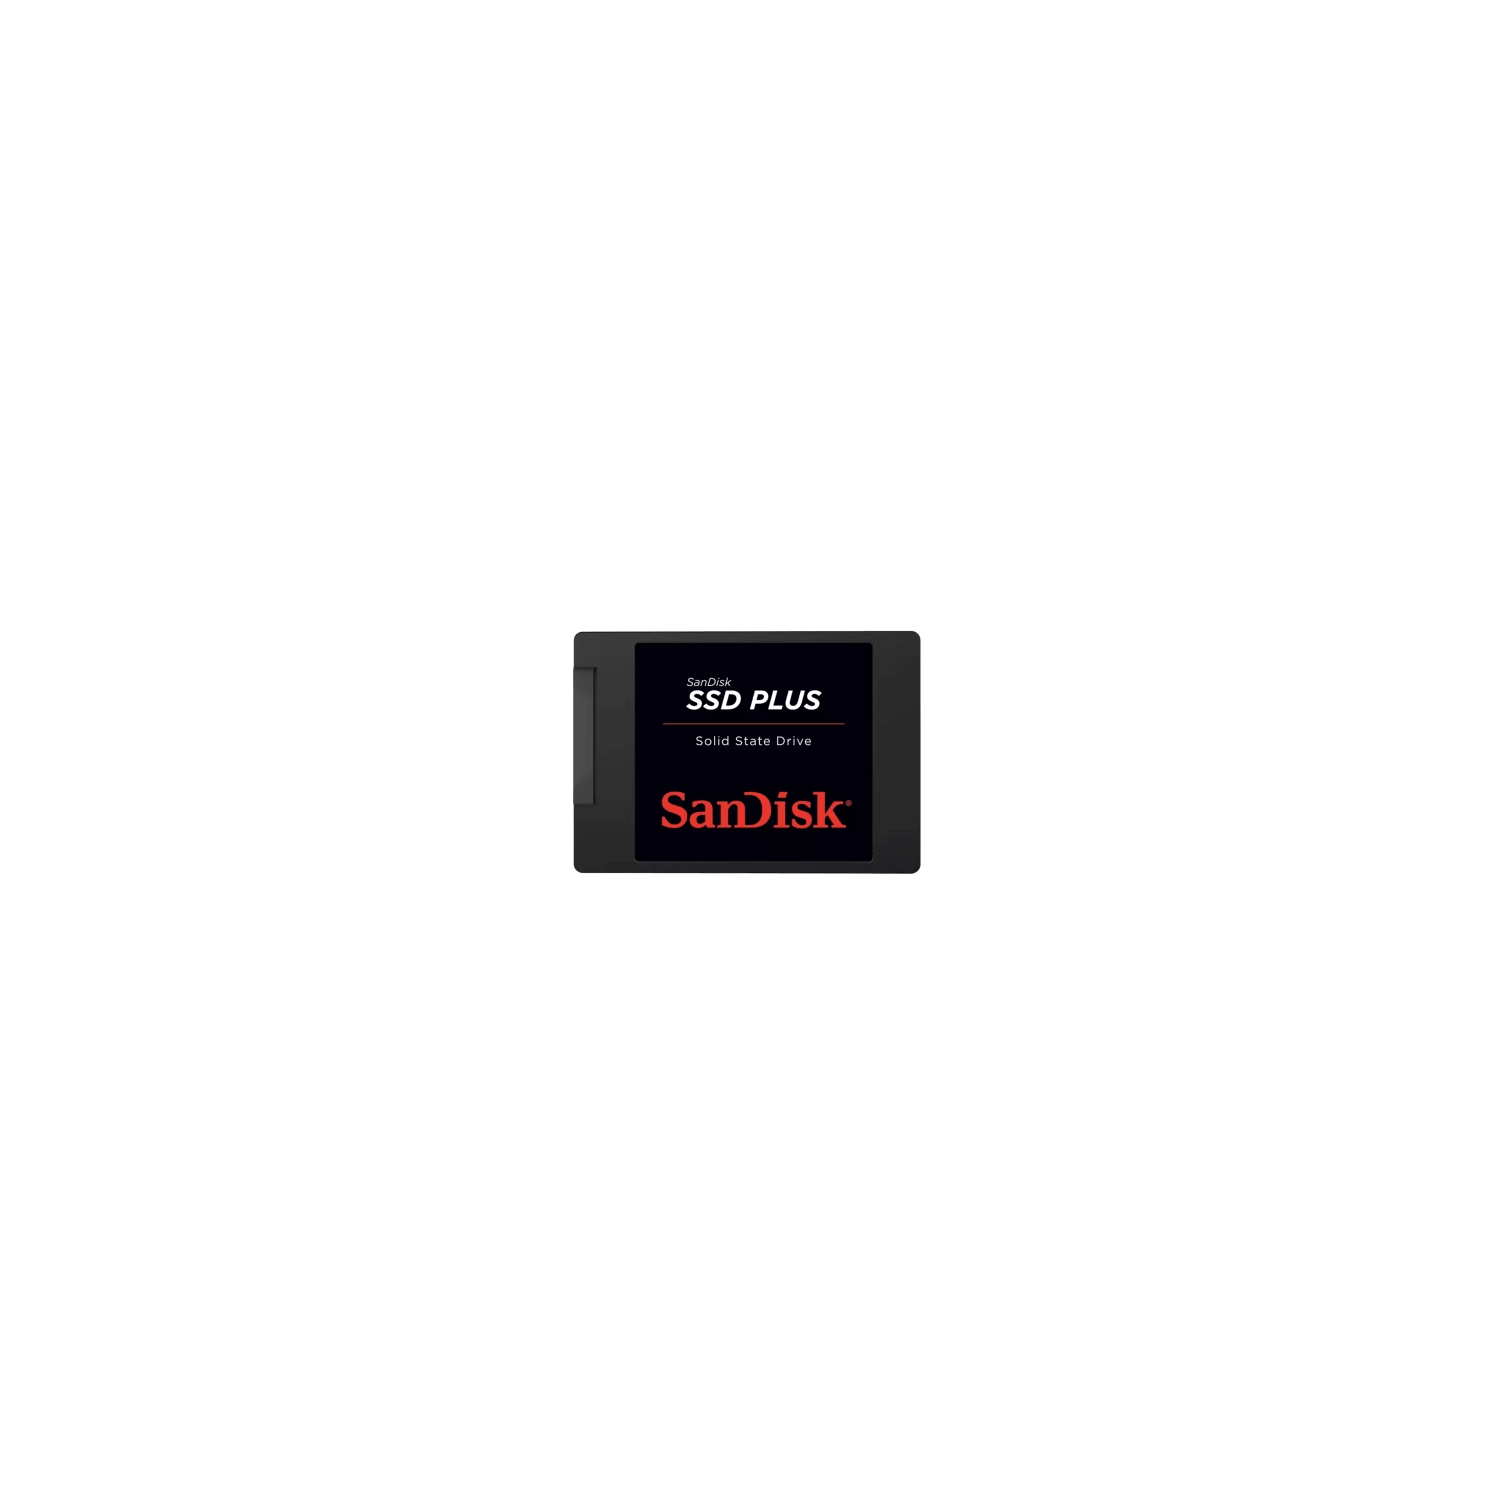 SanDisk SSD PLUS 1TB 2.5" SATA III 6GB/s 545MB/s Black Internal Solid State Drive (SDSSDA-1T00-G27)